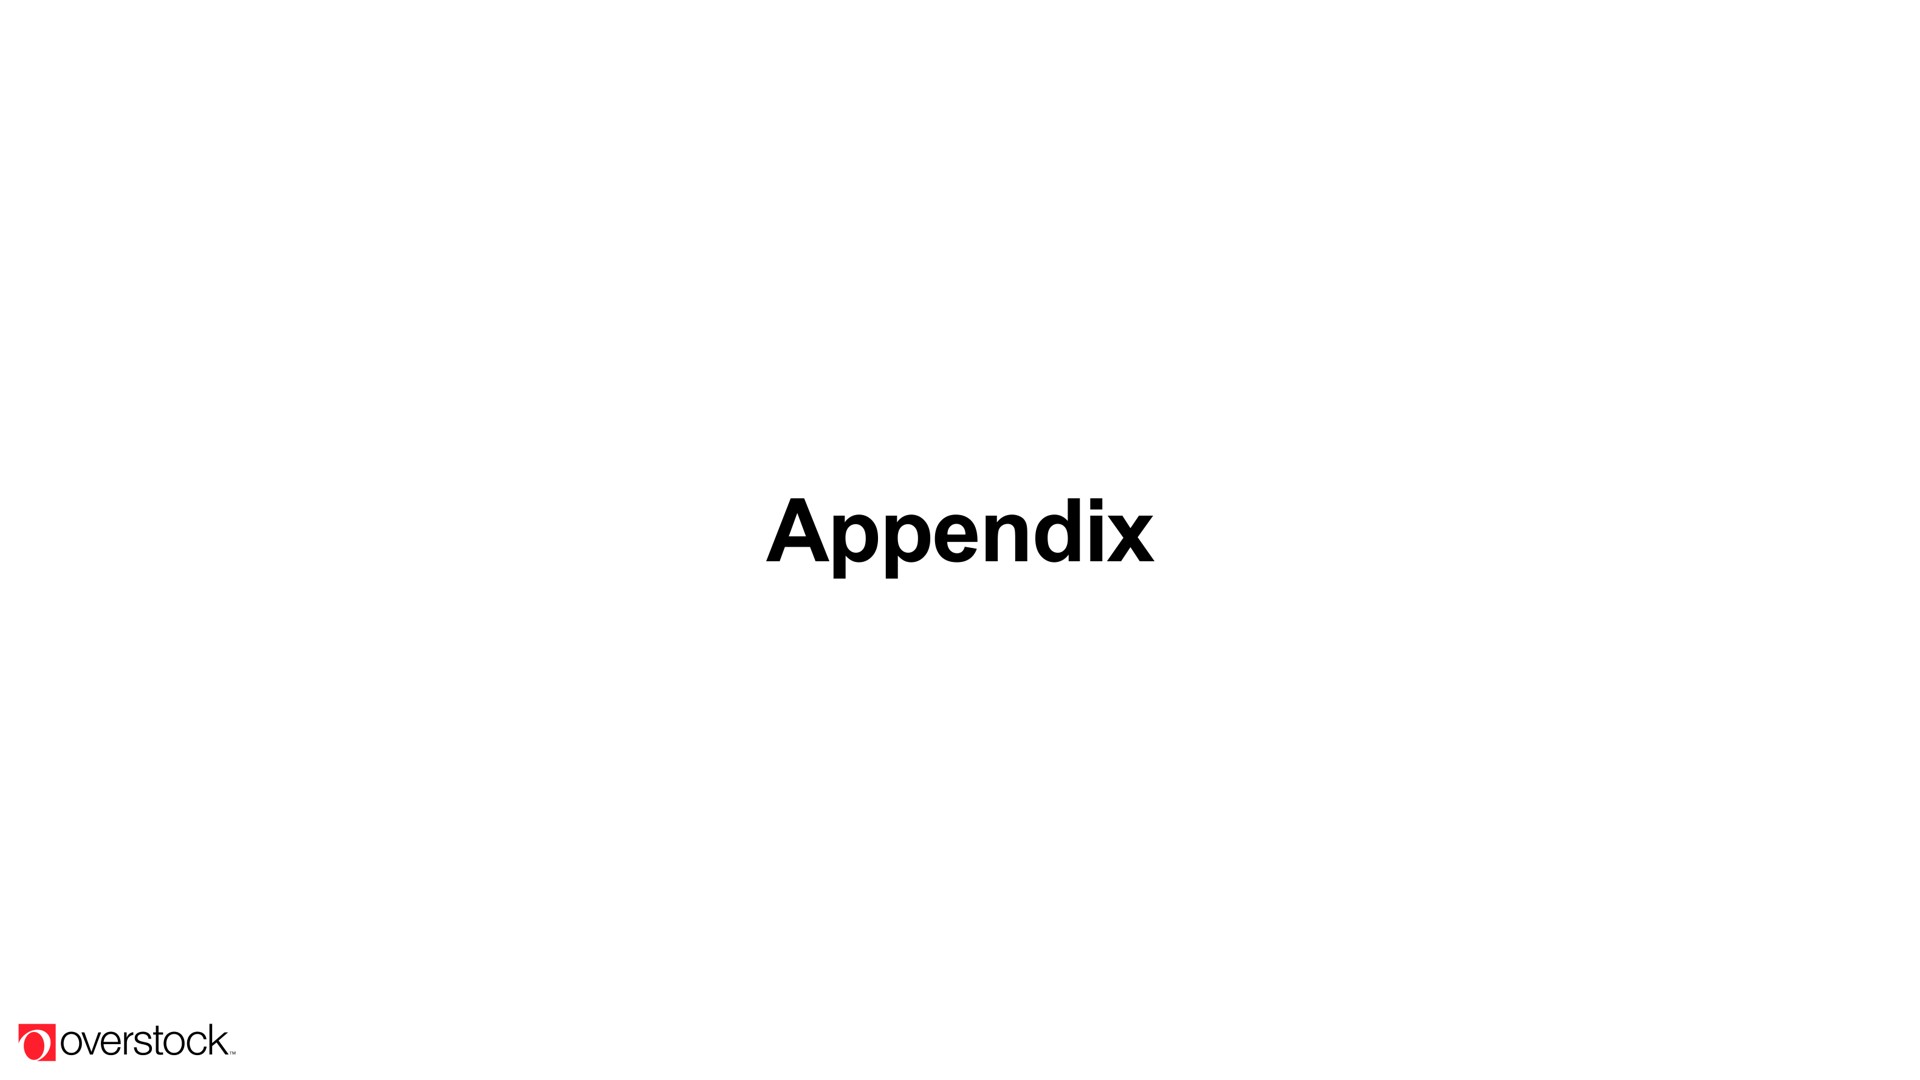 appendix | Overstock